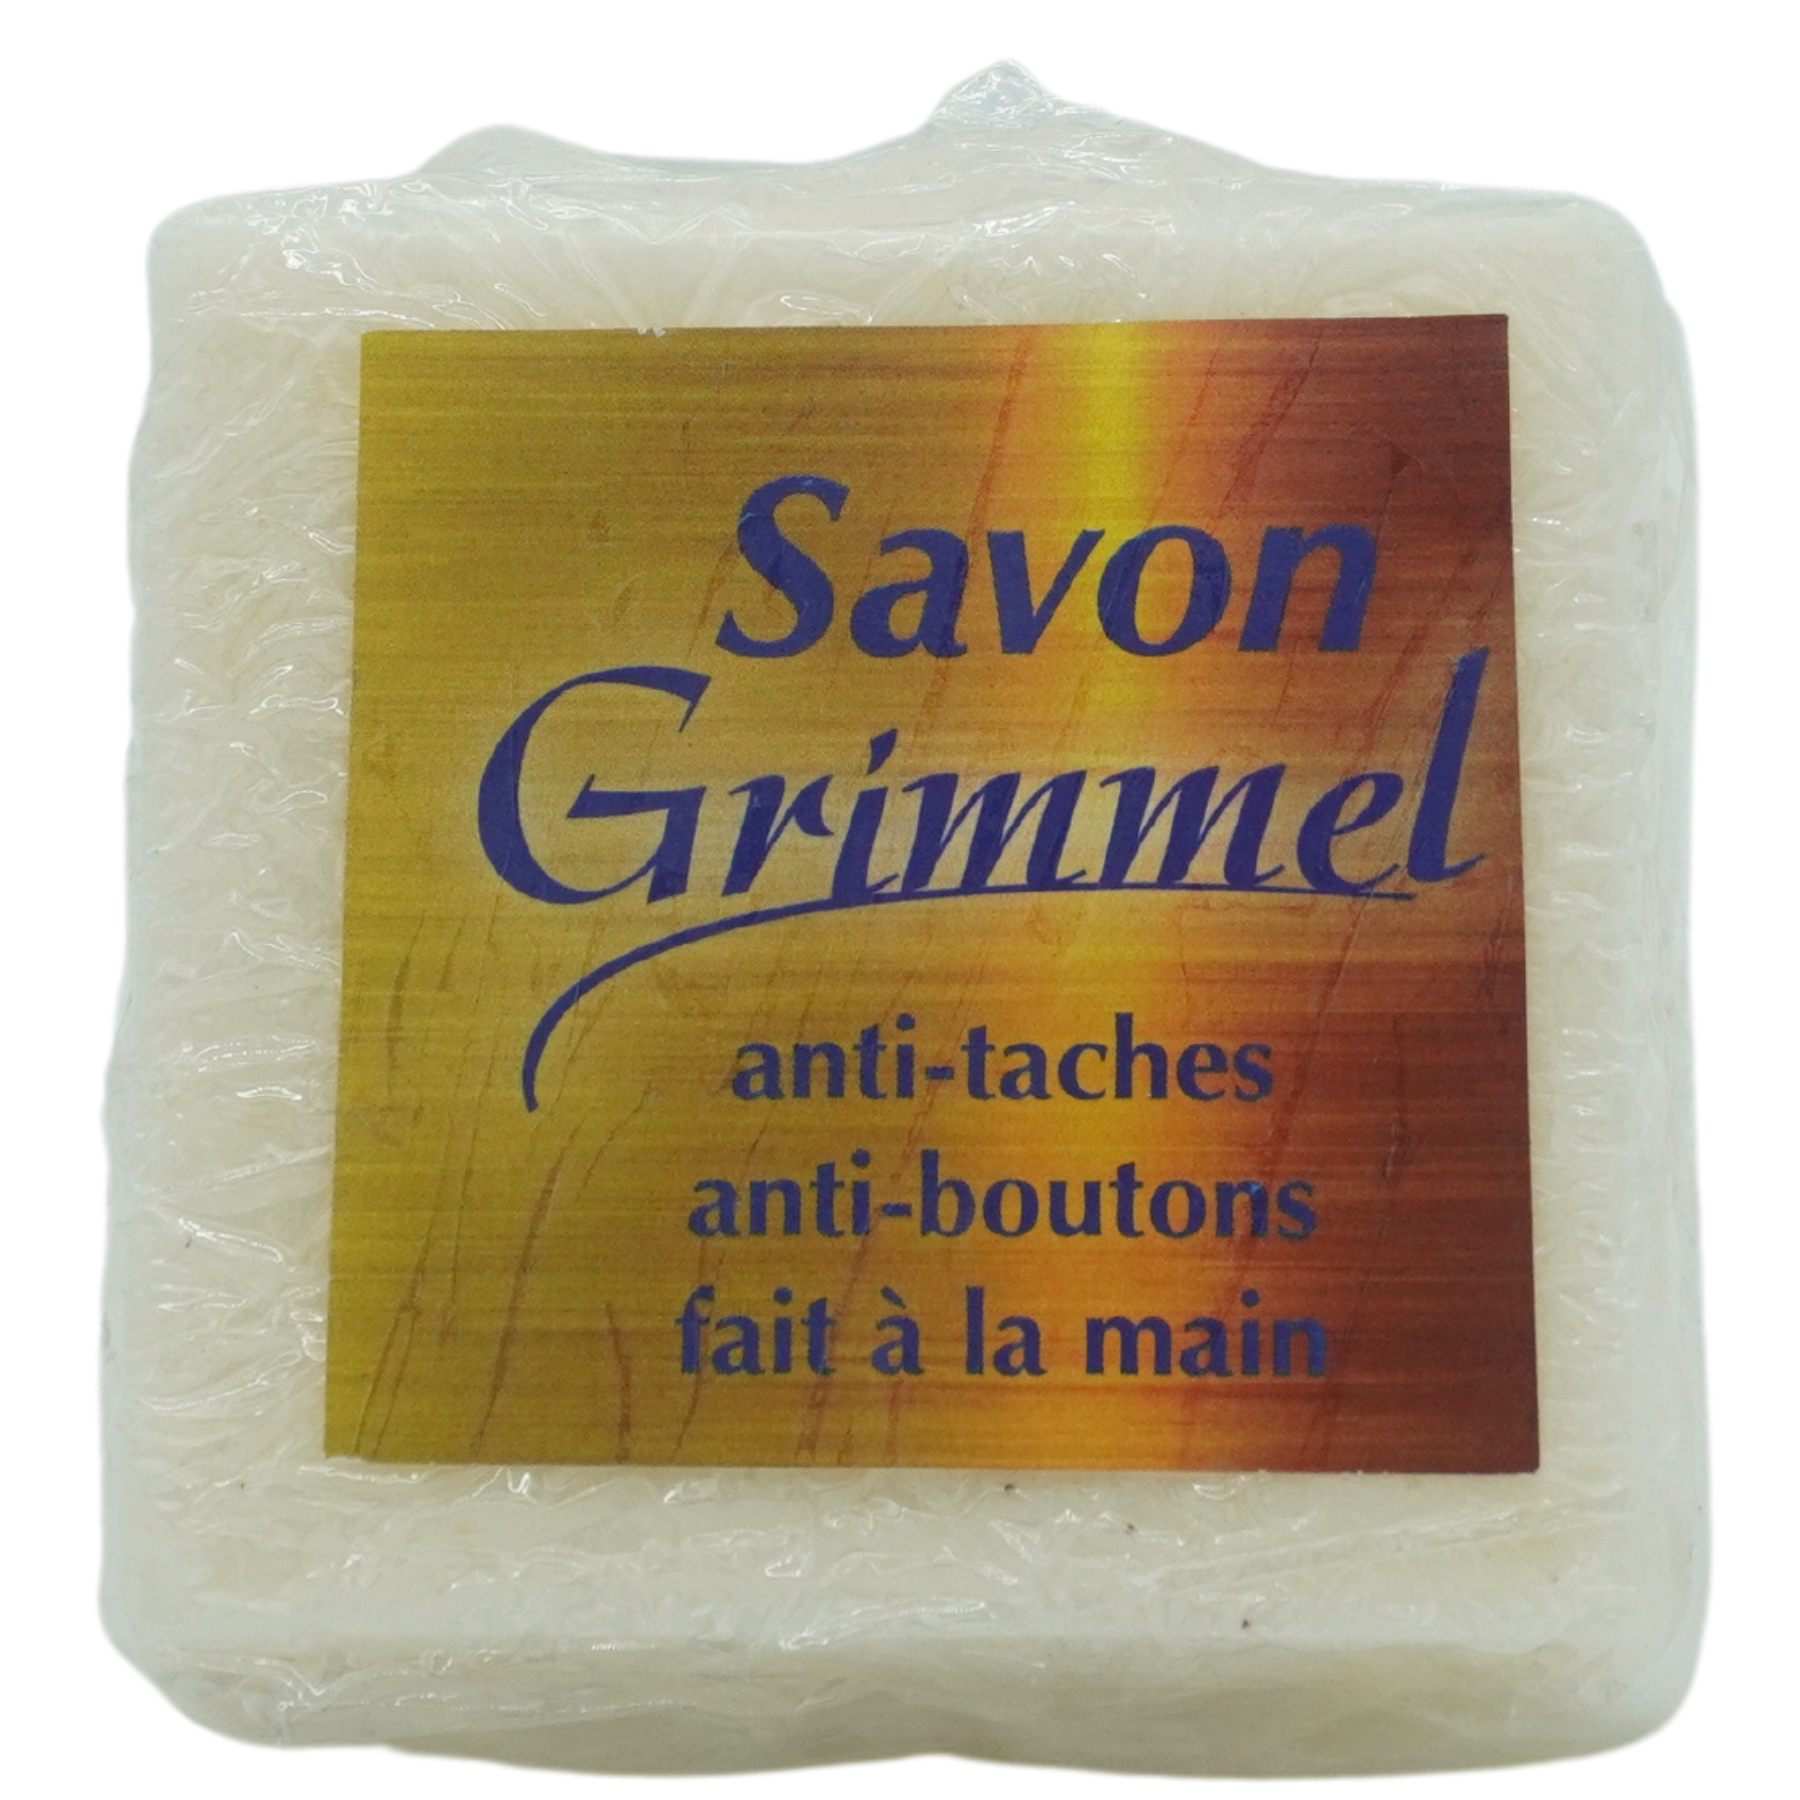 Grimmel soap